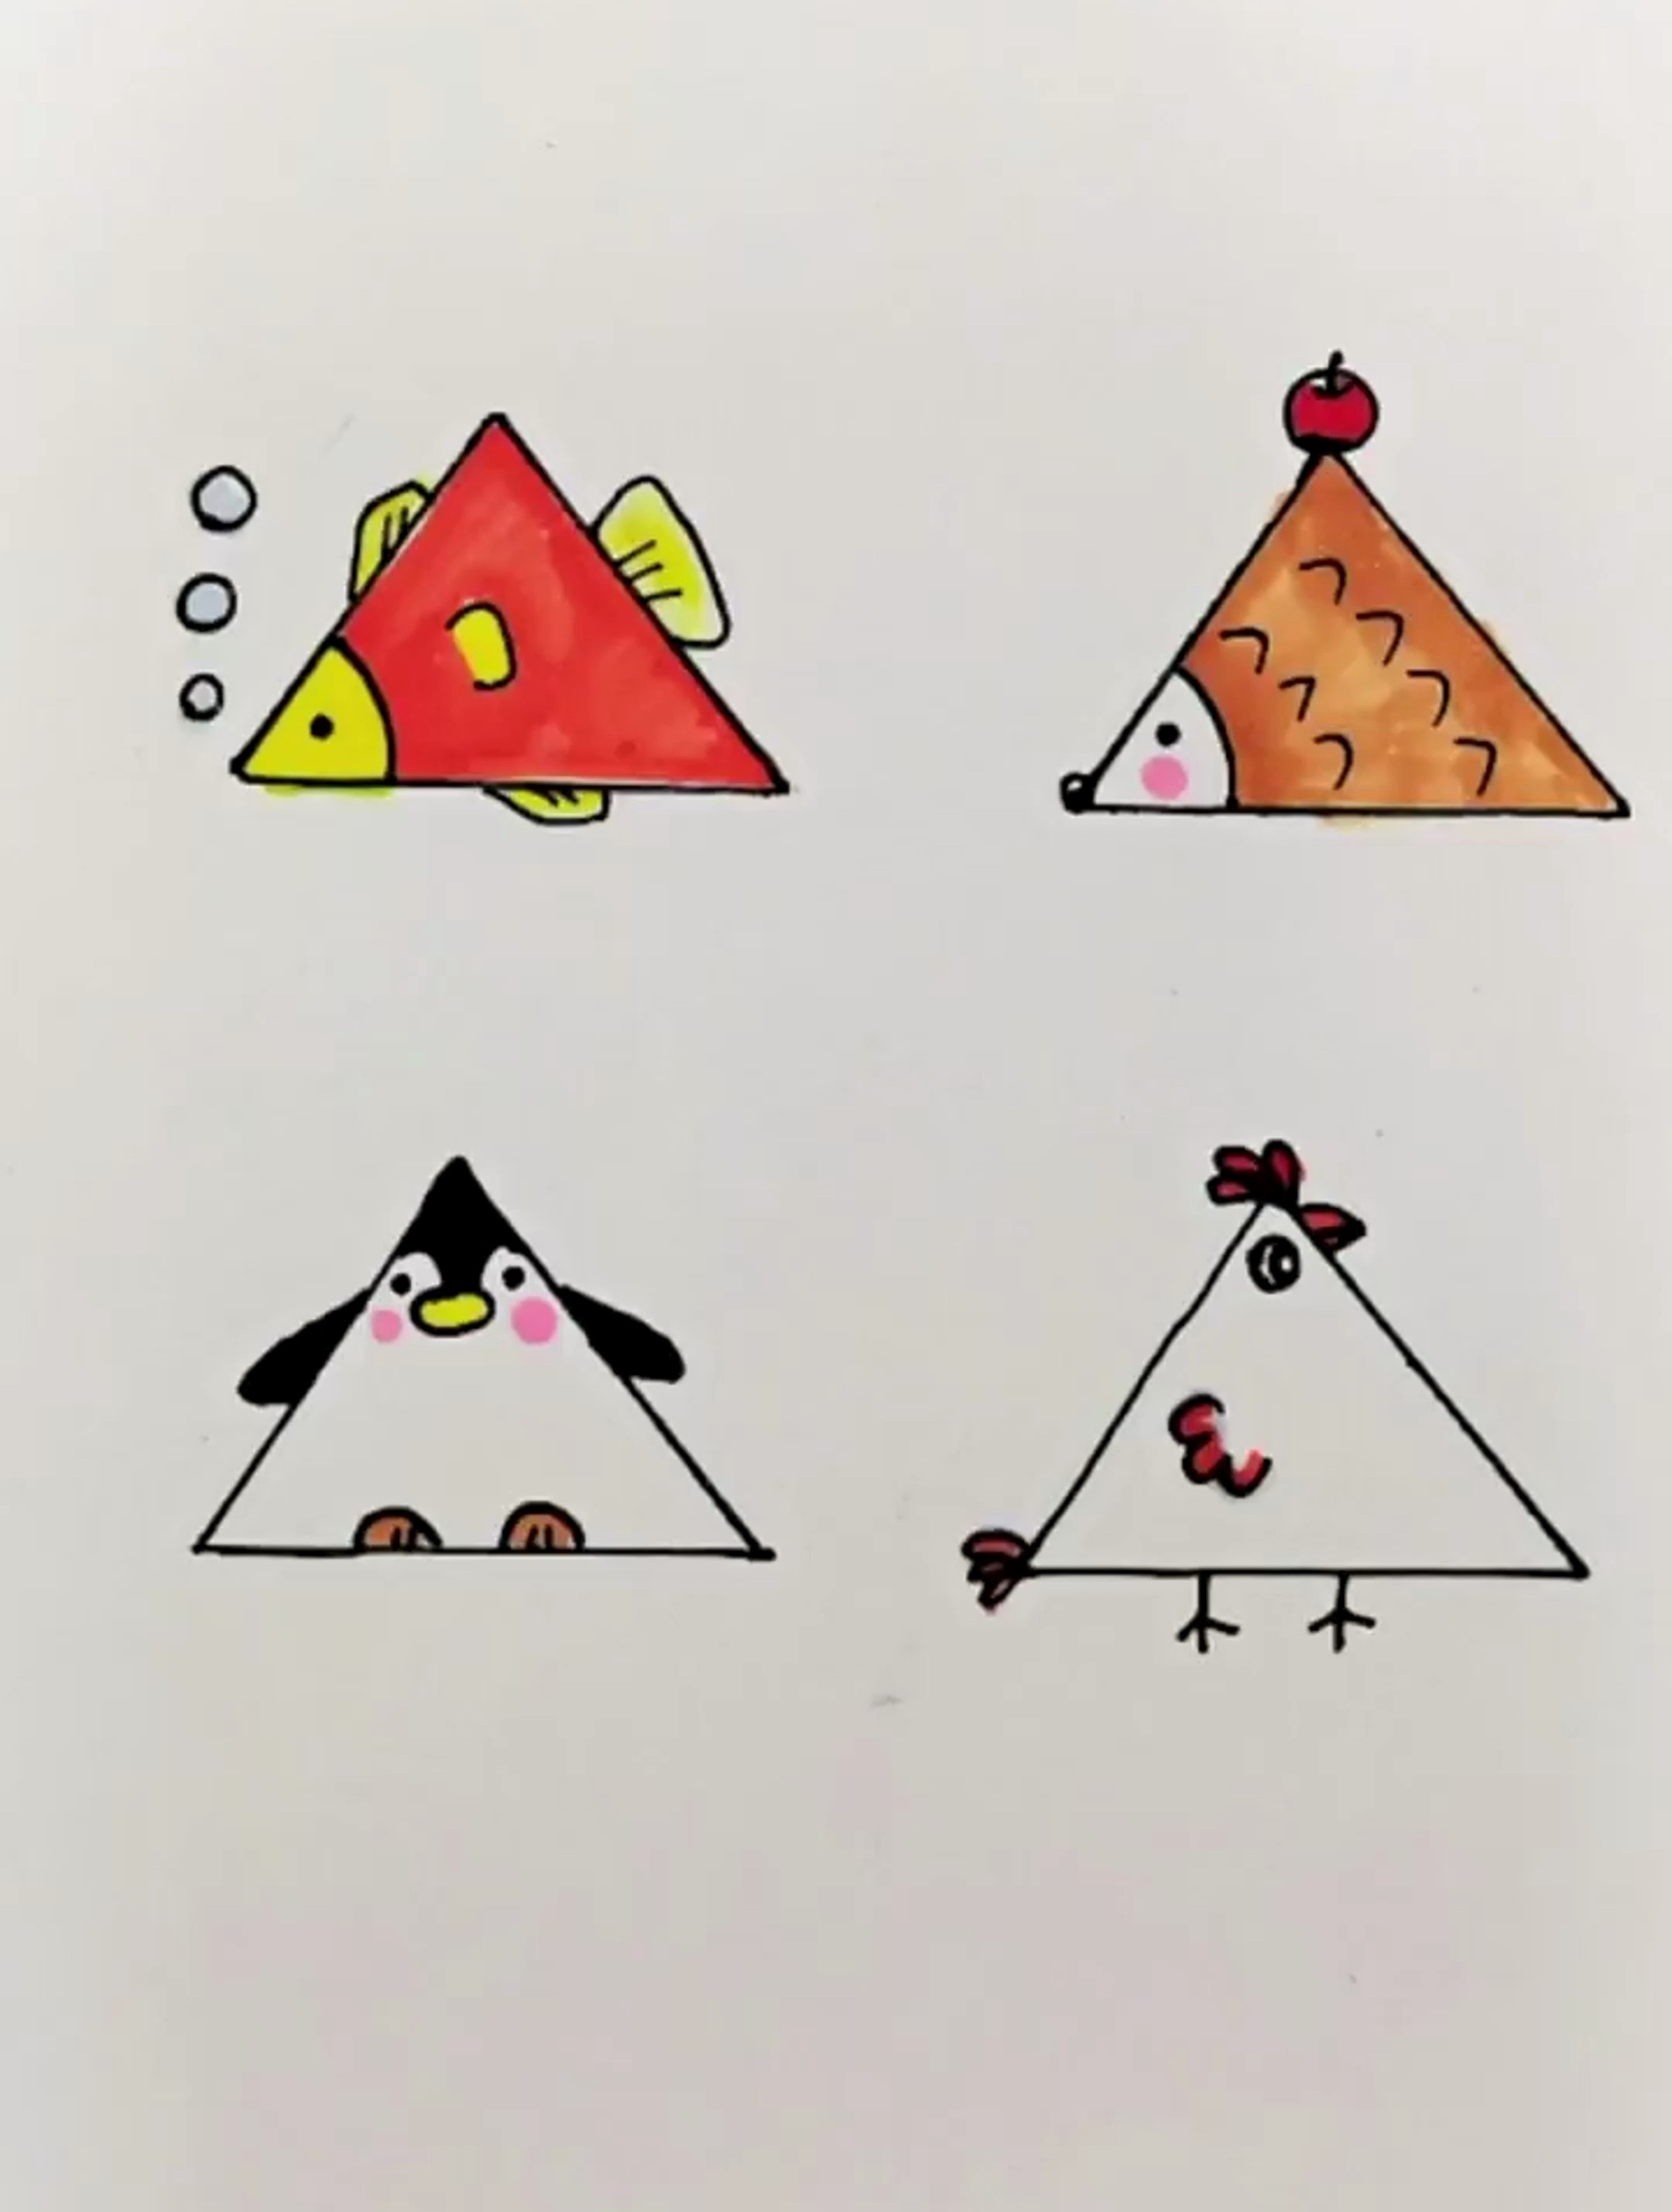 三角形画成有趣的图案图片